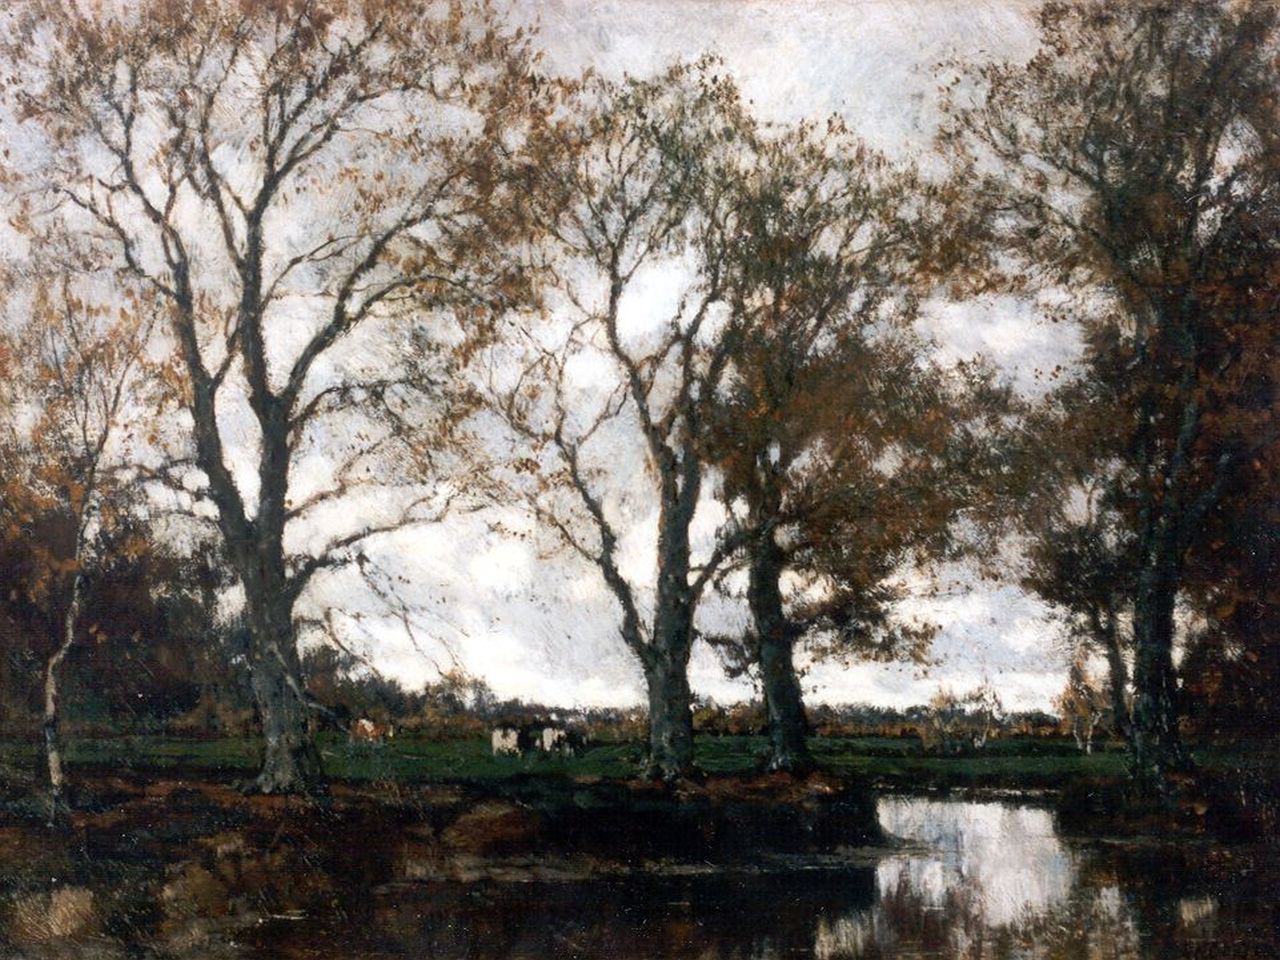 Gorter A.M.  | 'Arnold' Marc Gorter, Autumn landscape, Öl auf Leinwand 37,0 x 49,0 cm